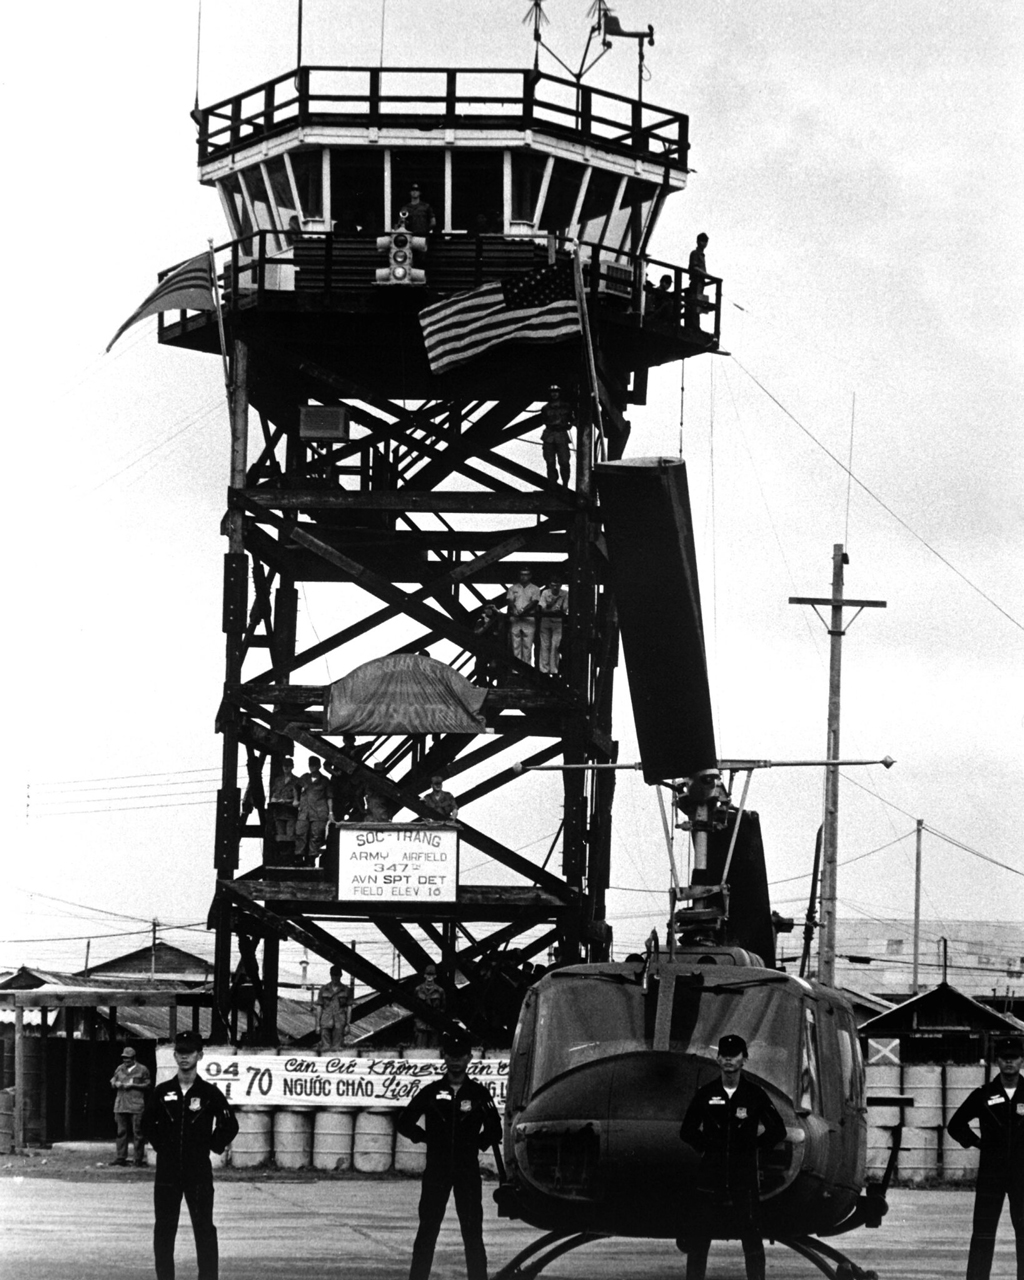 Khoảnh khắc trước khi lá cờ Mỹ được thay bằng cờ VNCH | Xung quanh là các phi công không lực Nam Việt Nam